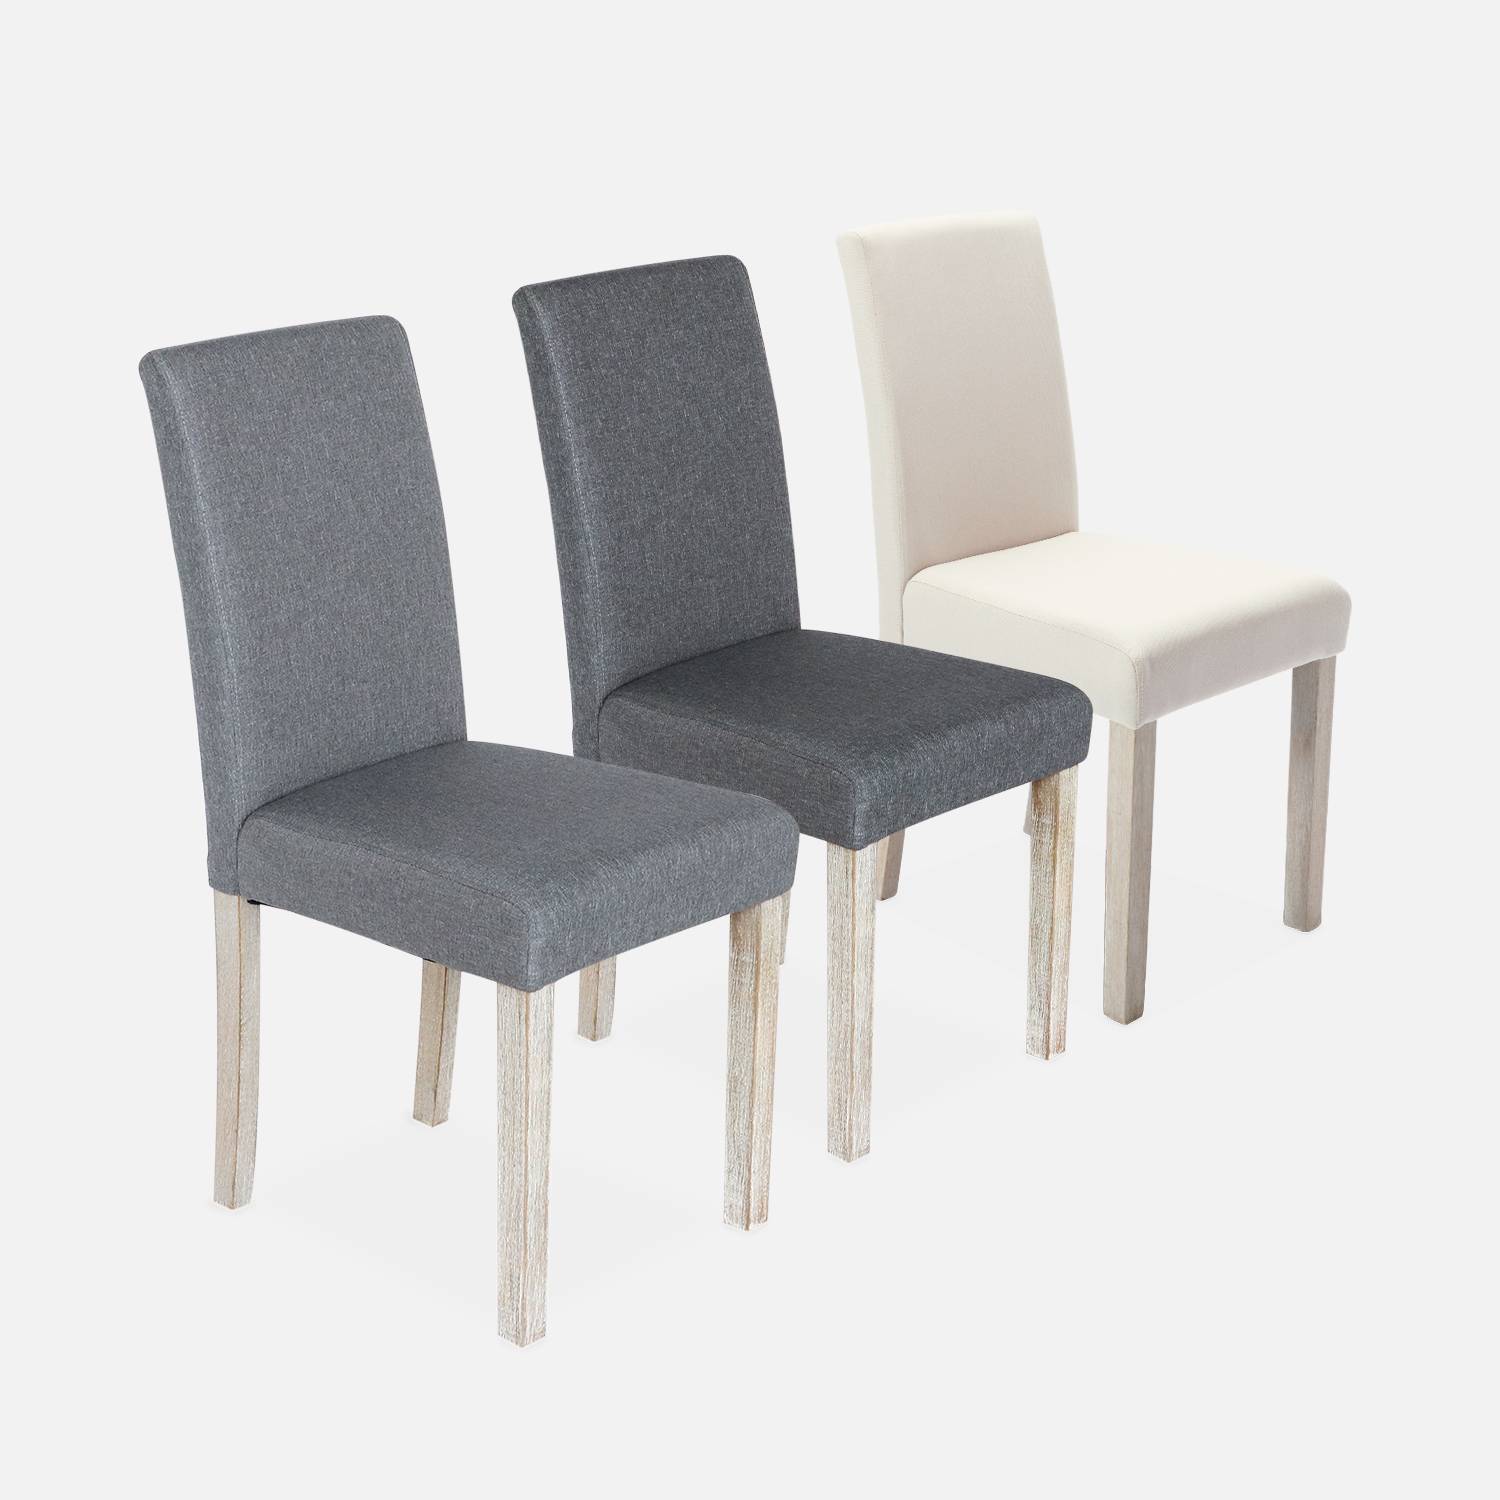 4er Set Stühle mit Stoffbezug Dunkelgrau, Holzbeine mit Ceruse Finish Photo5